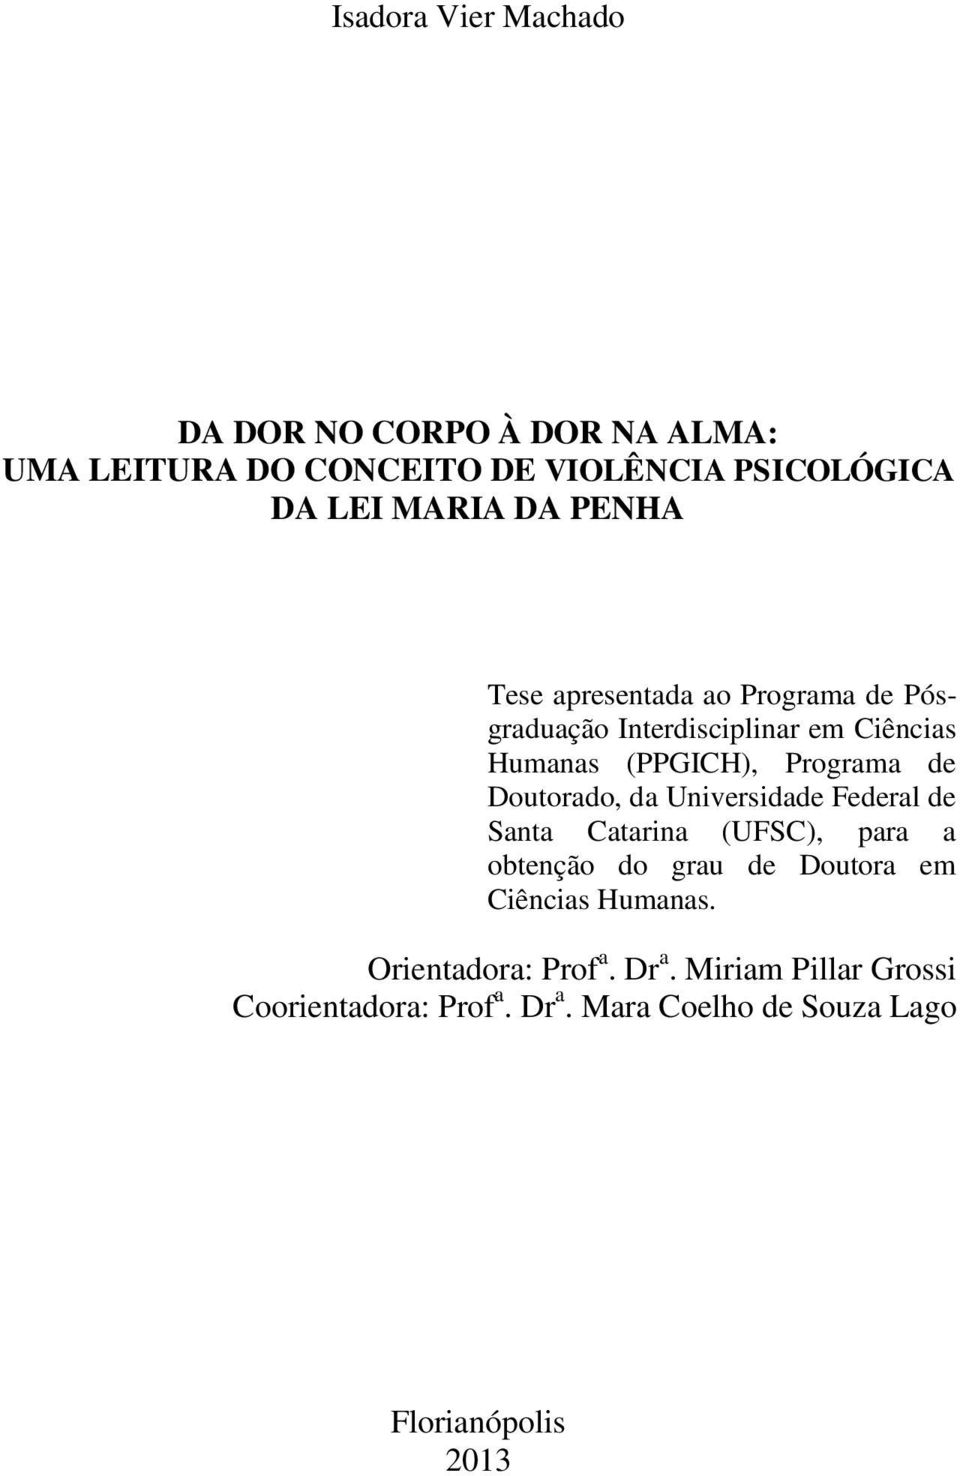 Doutorado, da Universidade Federal de Santa Catarina (UFSC), para a obtenção do grau de Doutora em Ciências Humanas.